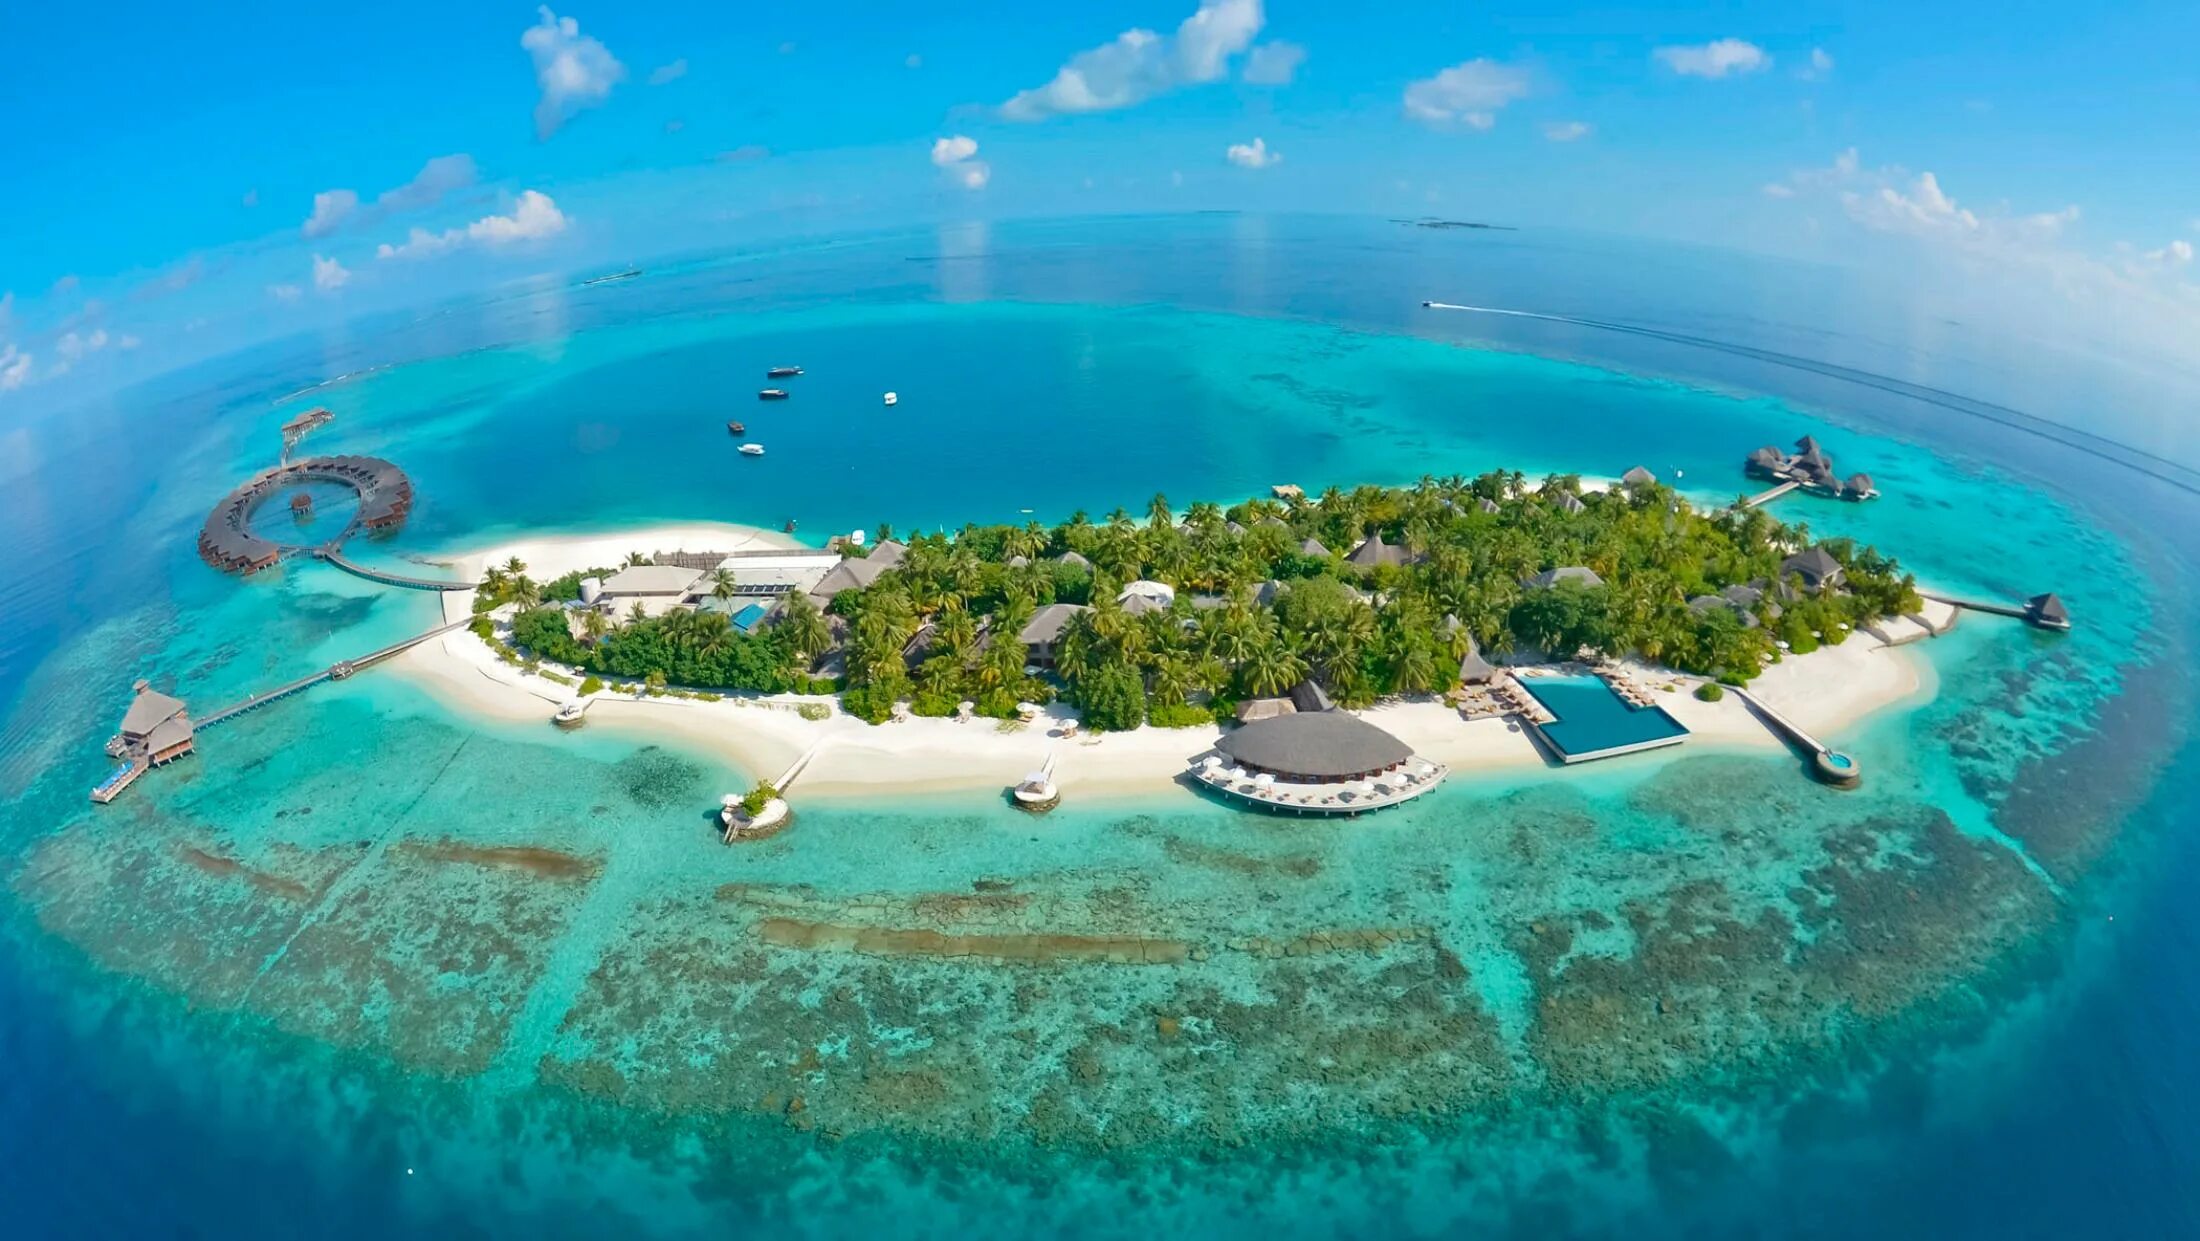 O island. Атолл Адду Мальдивы. Хувафен Фуши Мальдивы. Парадайз Айленд риф Мальдивы. Остров Дигура Мальдивы.